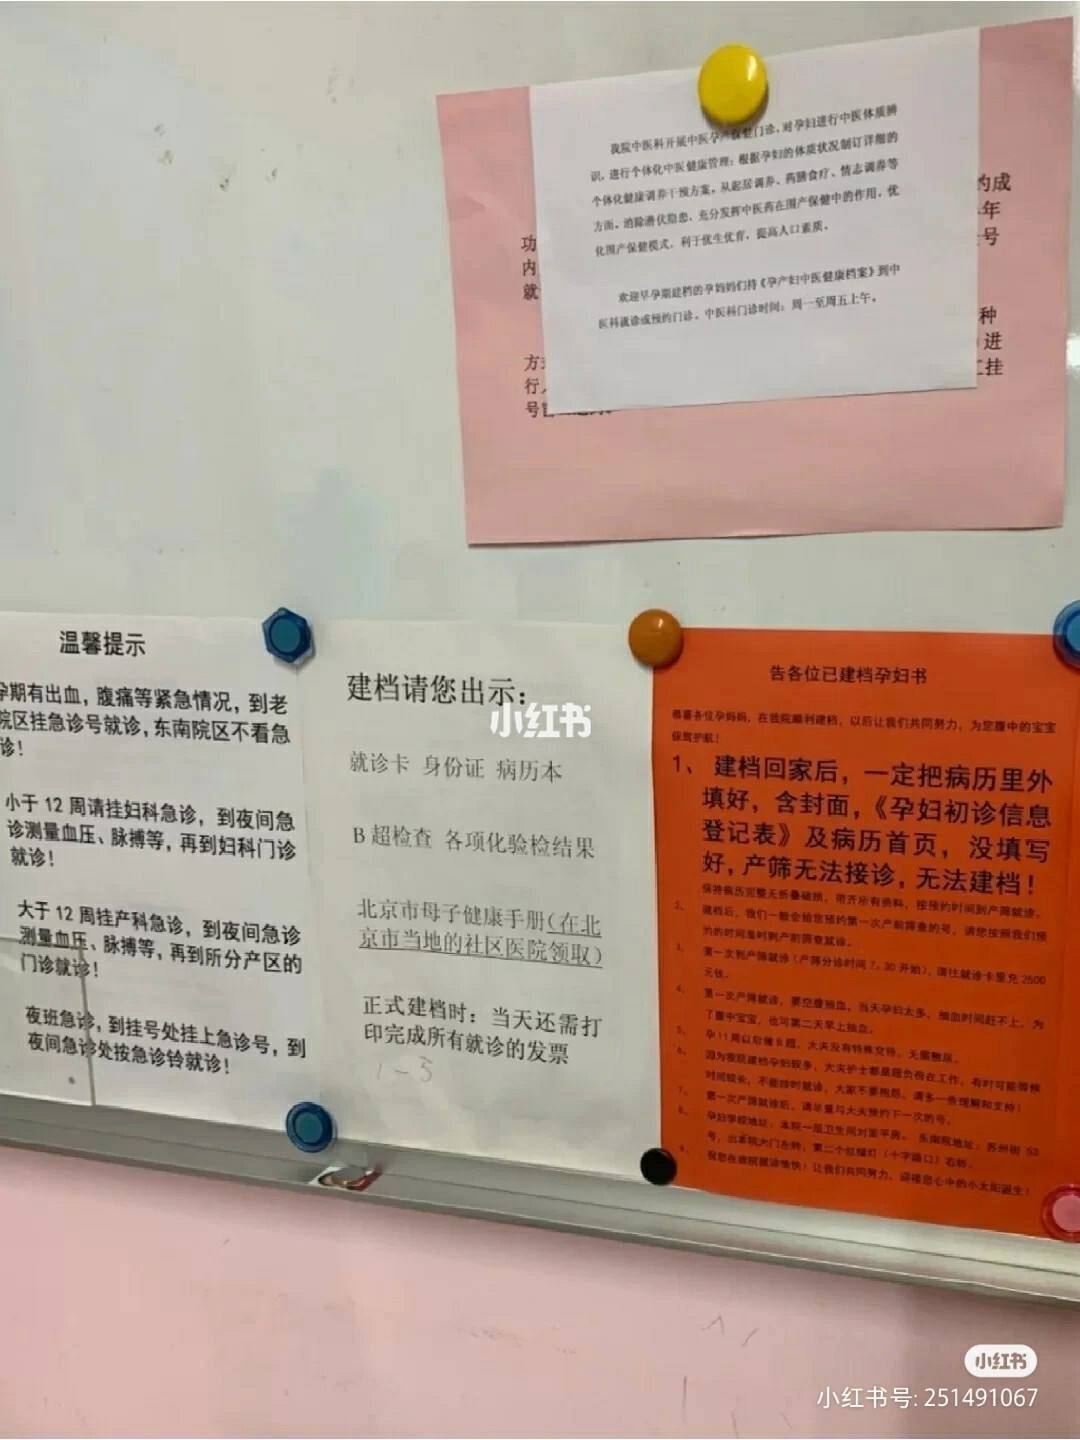 北京市海淀妇幼保健院专家预约挂号-跑腿代挂就是这么简单!的简单介绍